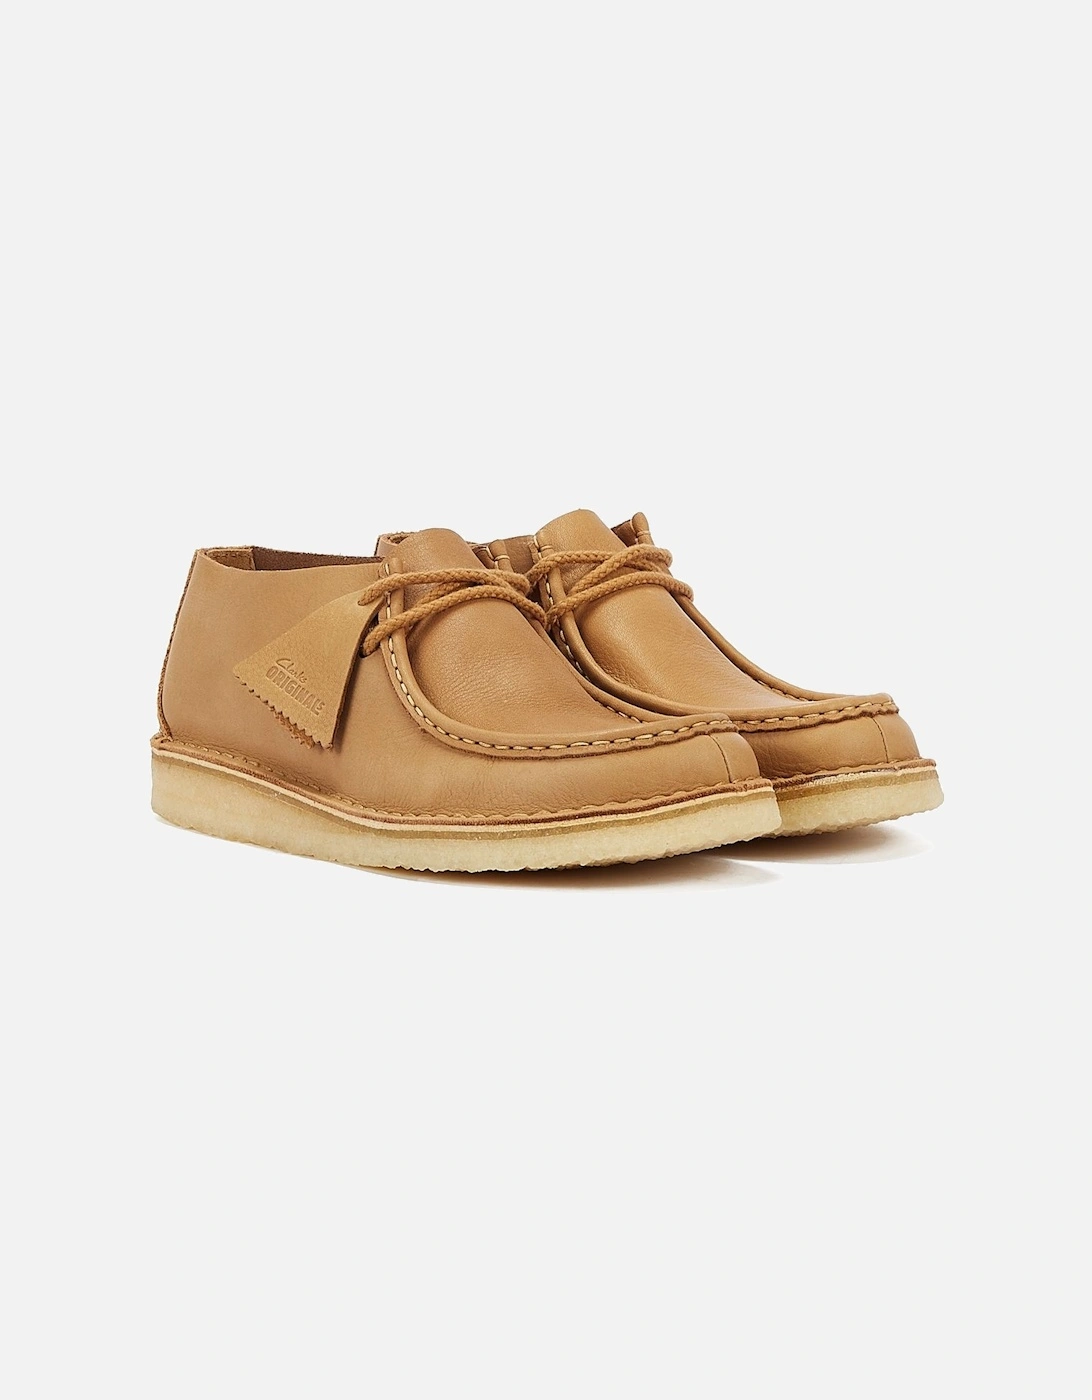 Originals Nomad Men's Mid Tan Shoes, 9 of 8